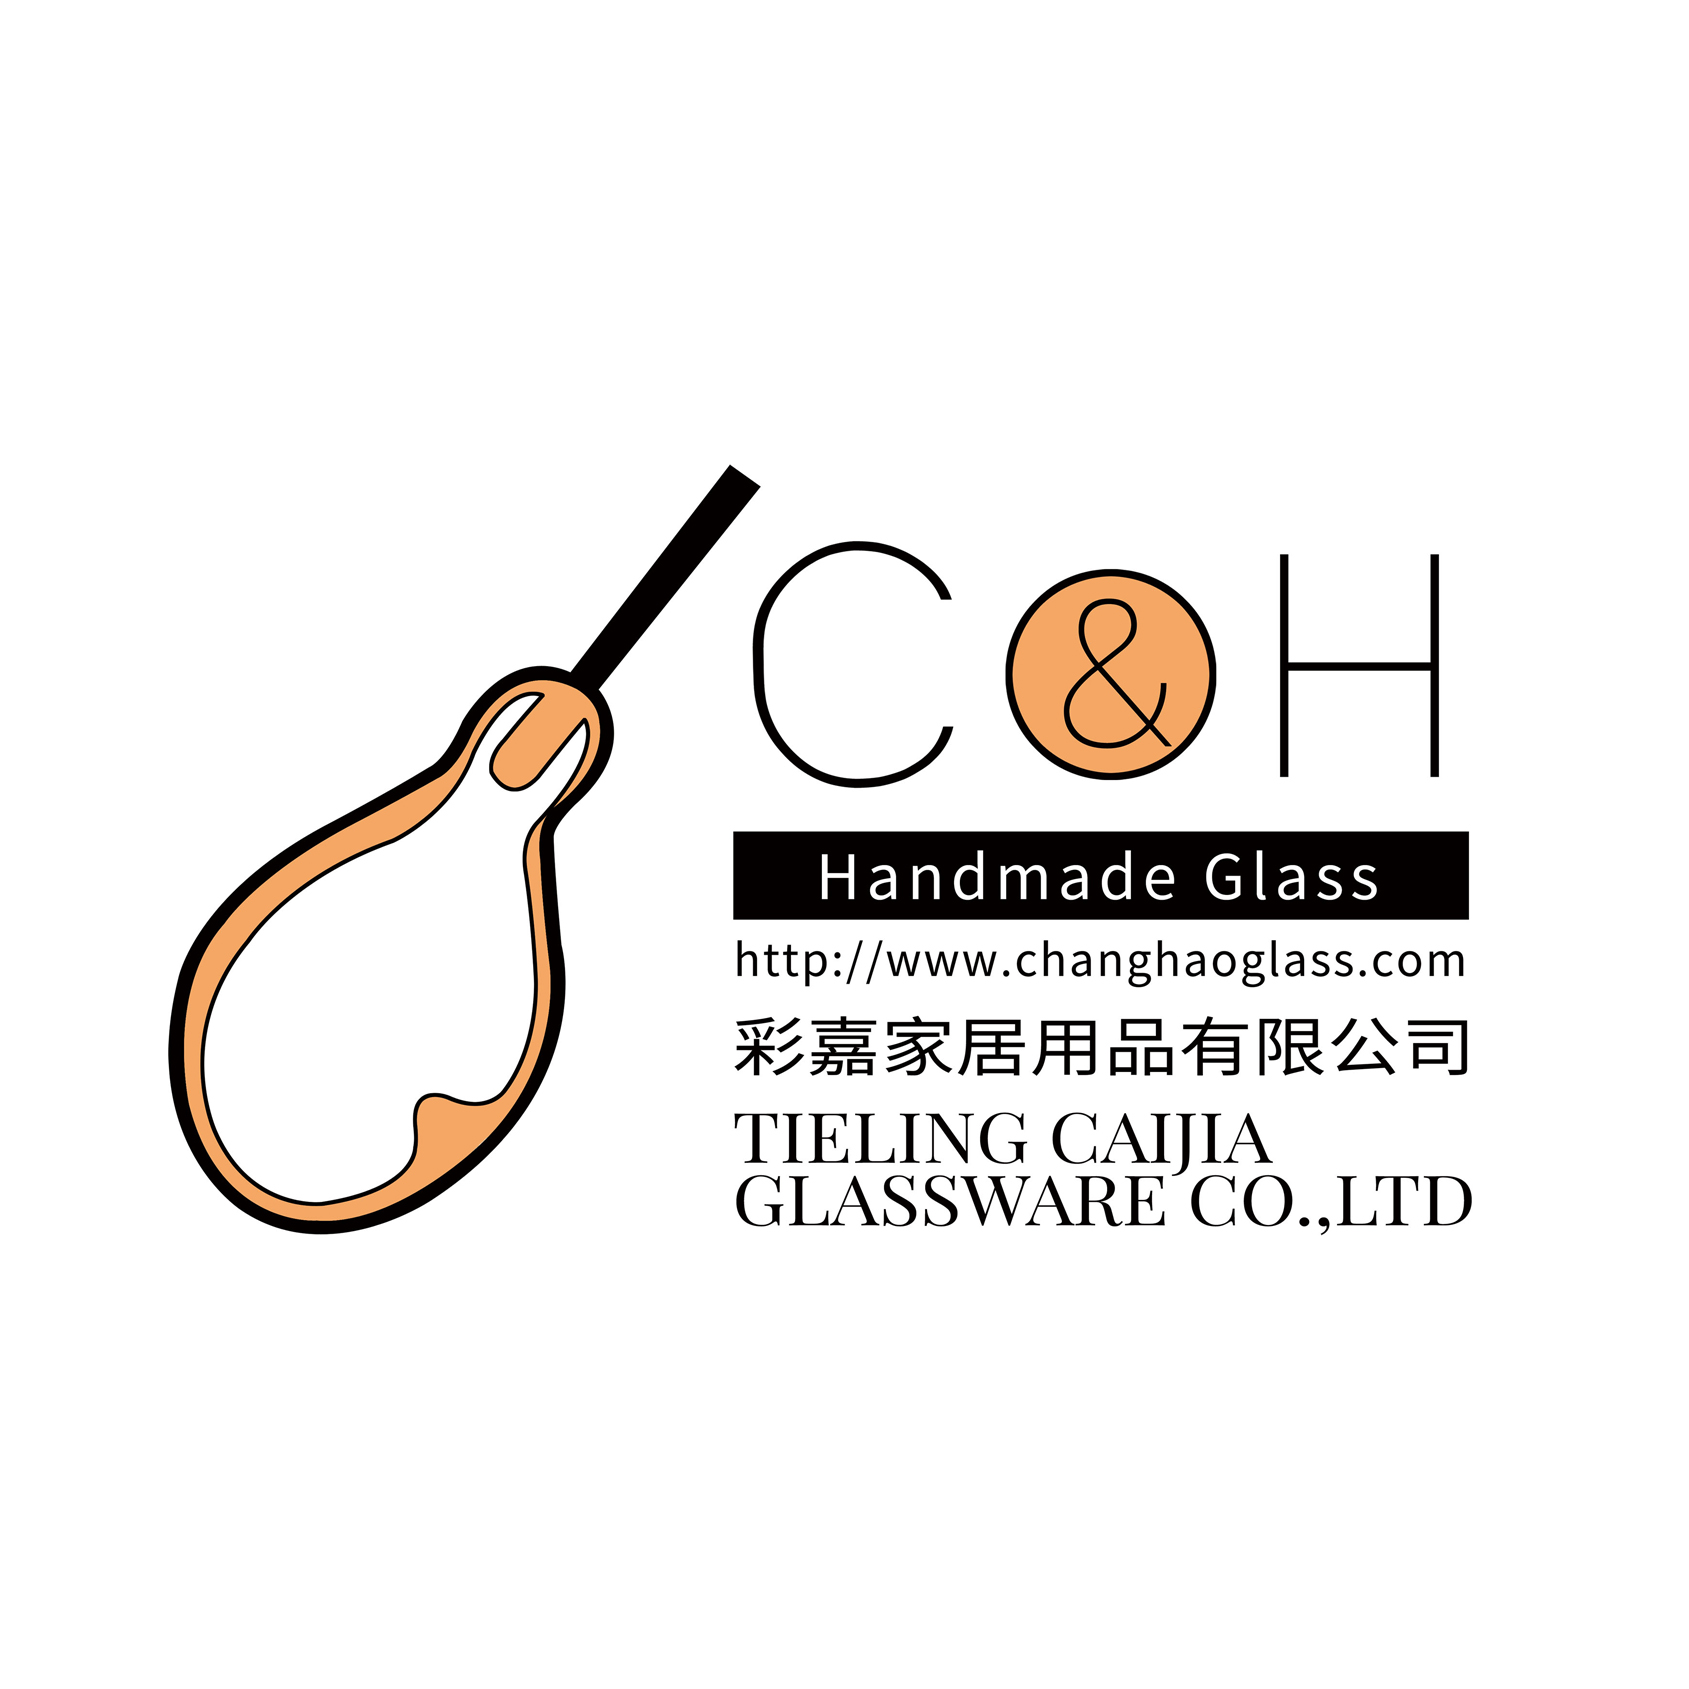 Tieling Caijia Glassware Co.,Ltd